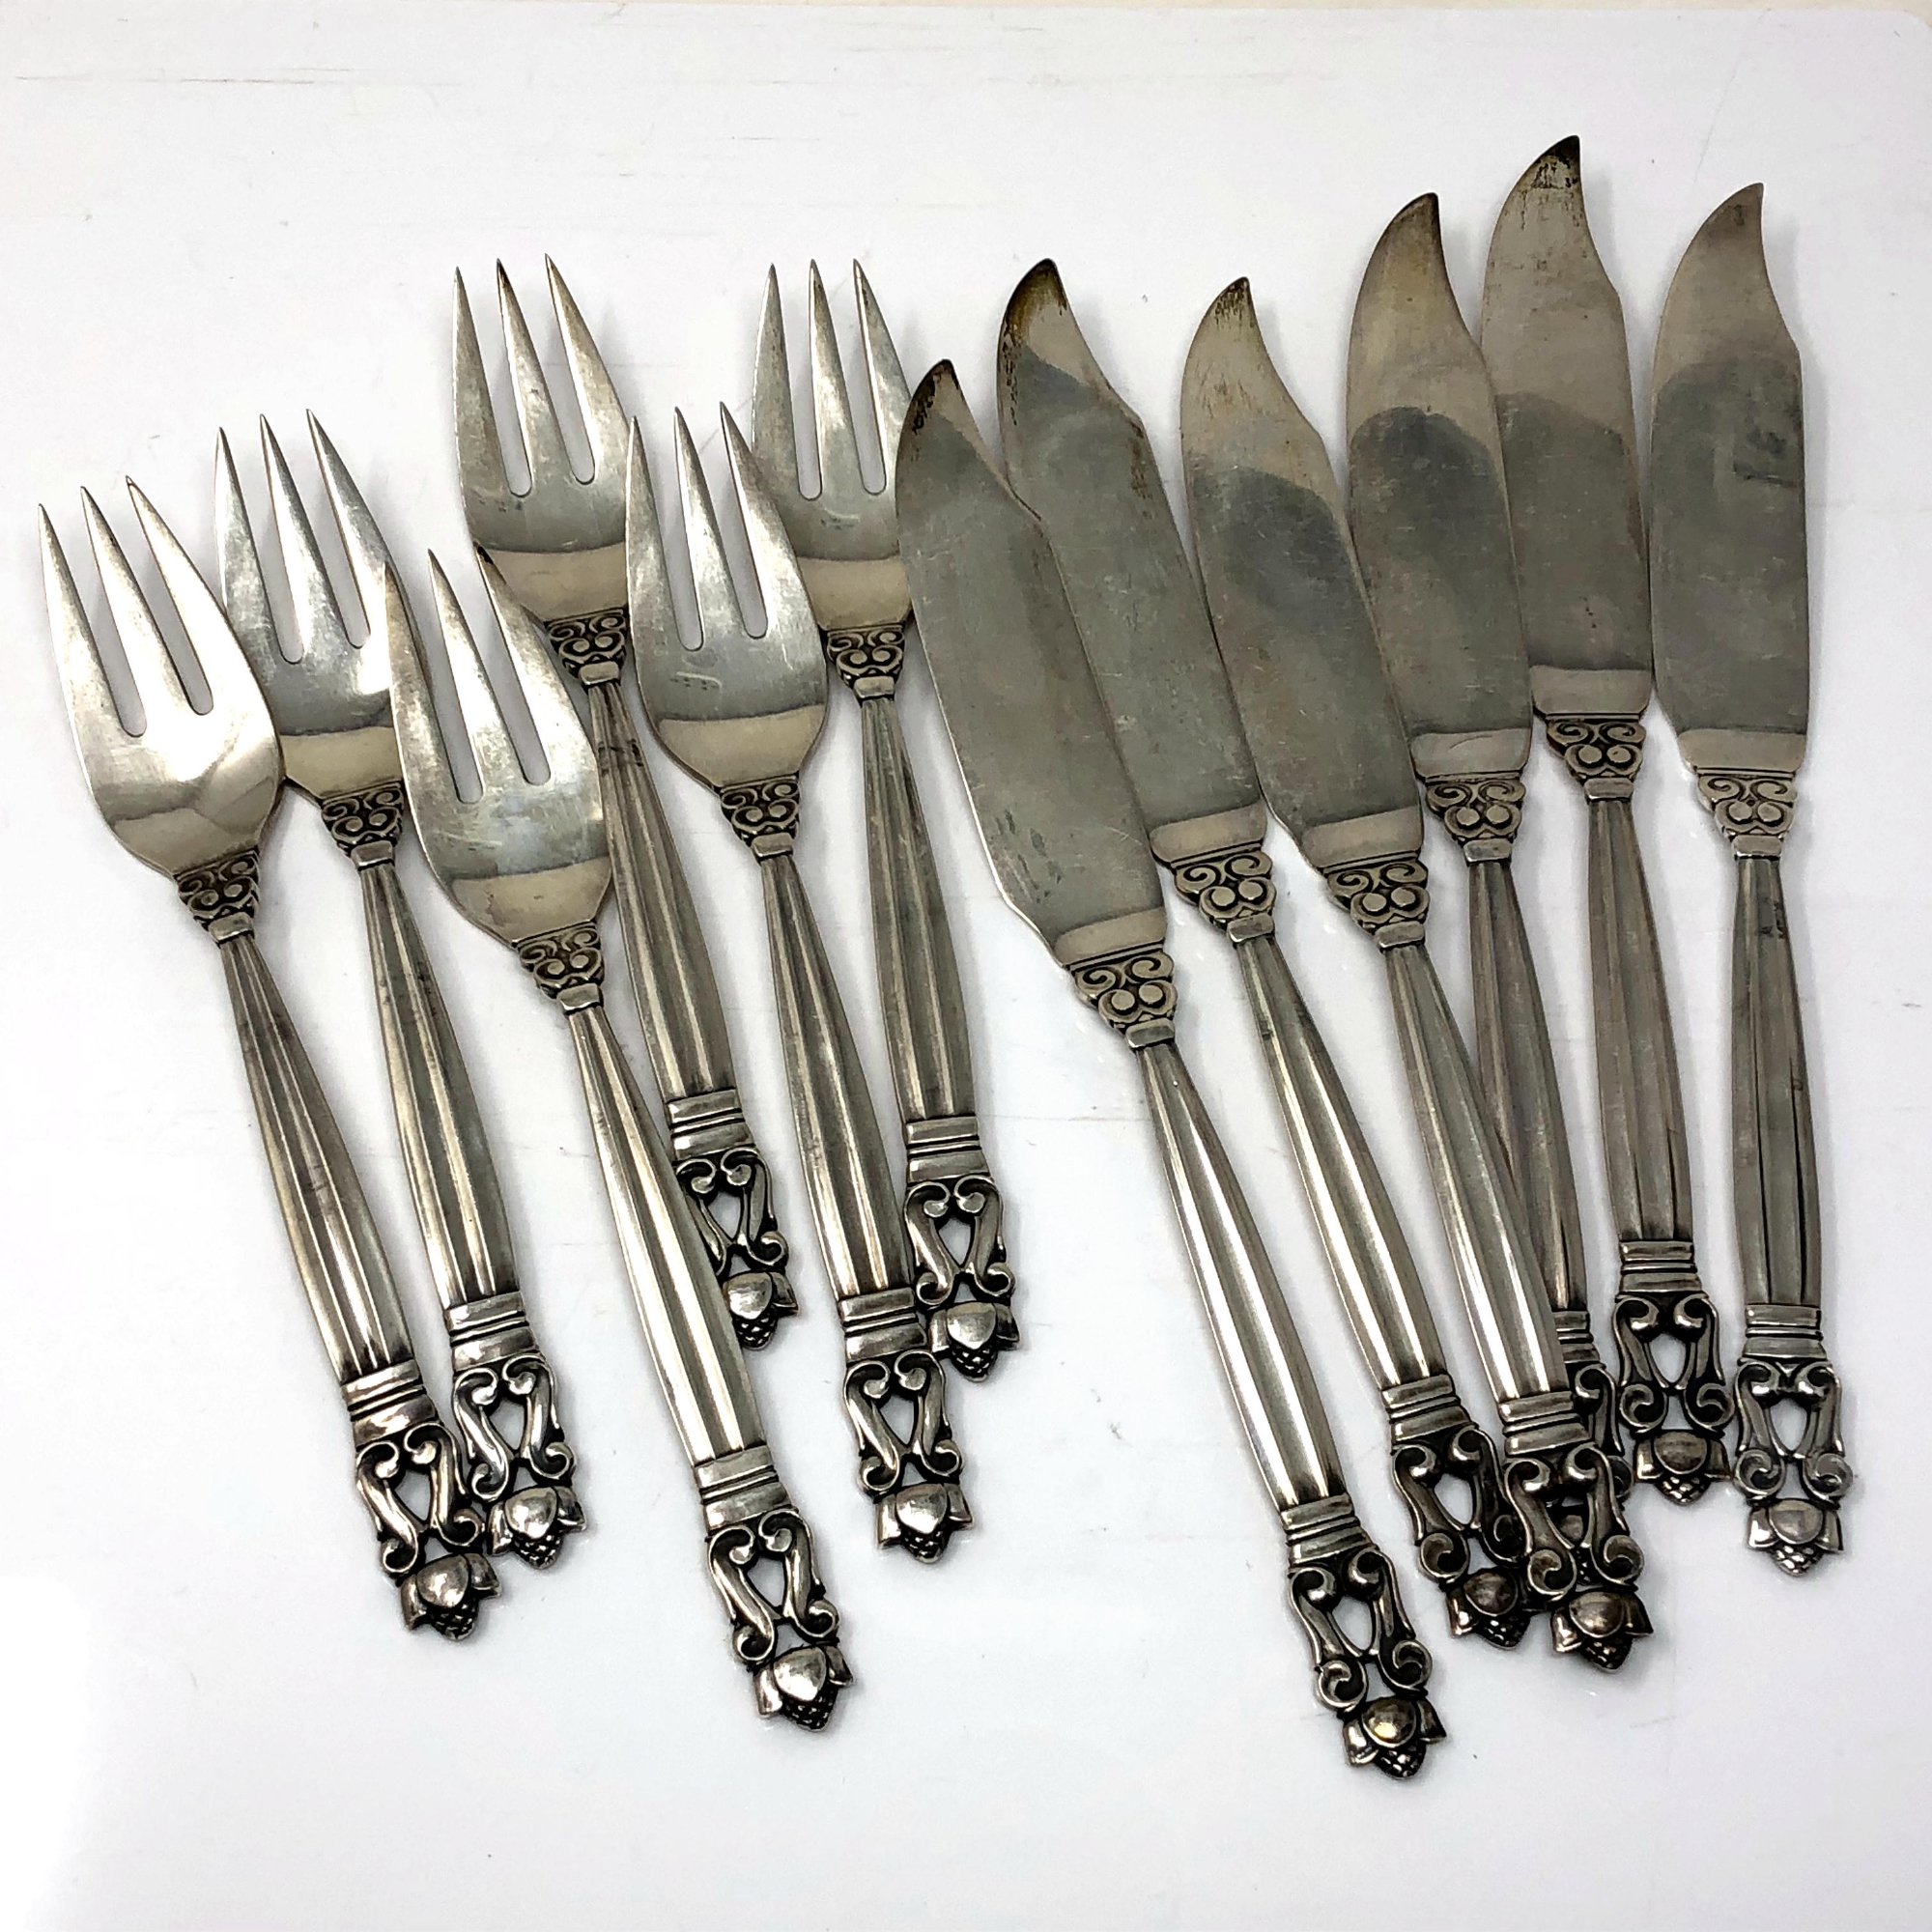 A superb set of vintage Georg Jensen acorn pattern fish knives and forks